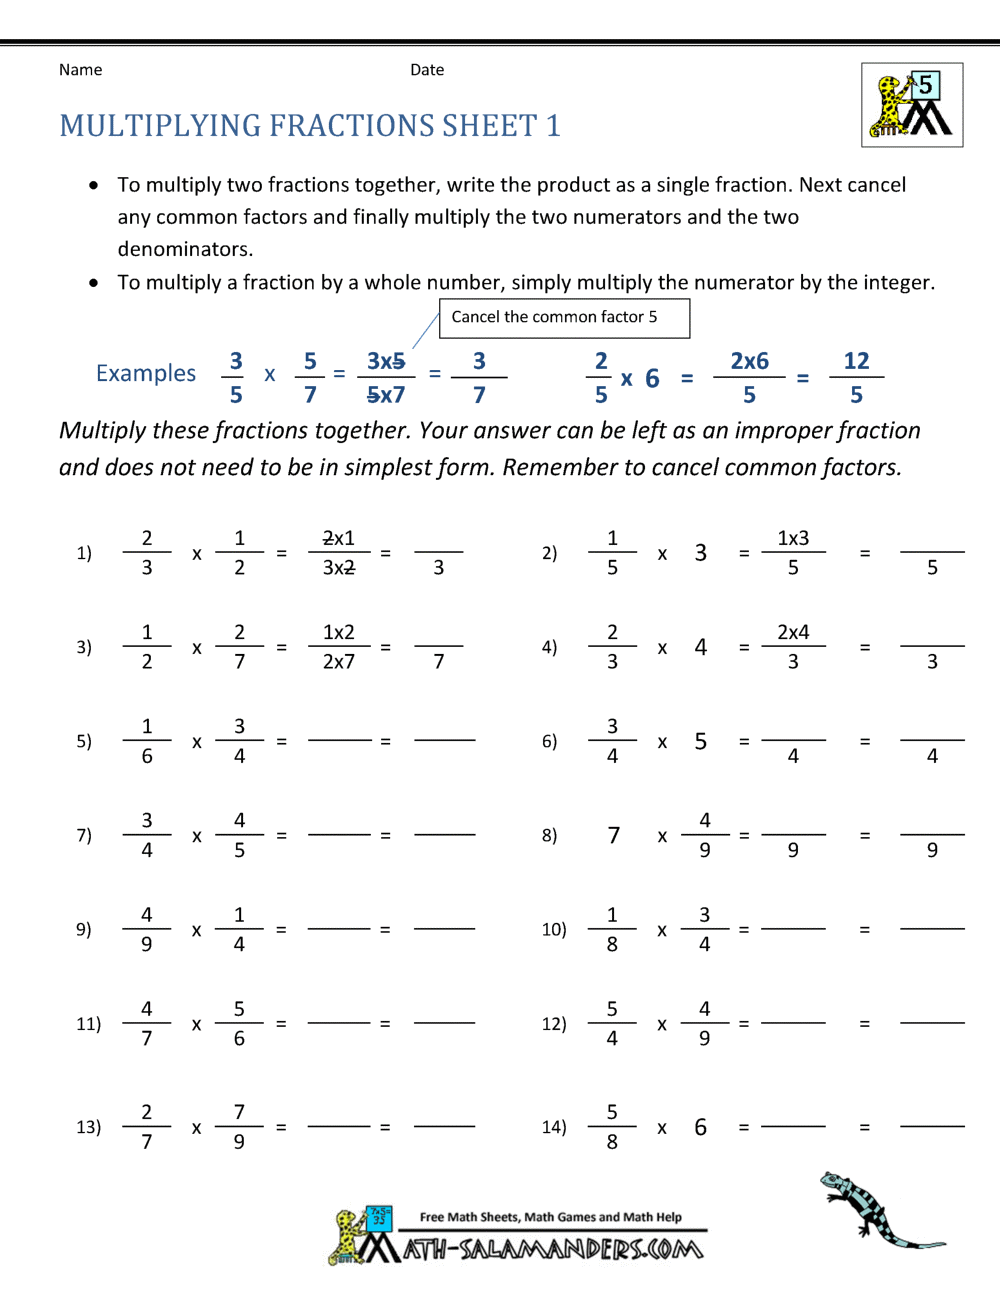 Multiplying Fractions Worksheet For Multiplying Fractions Word Problems Worksheet